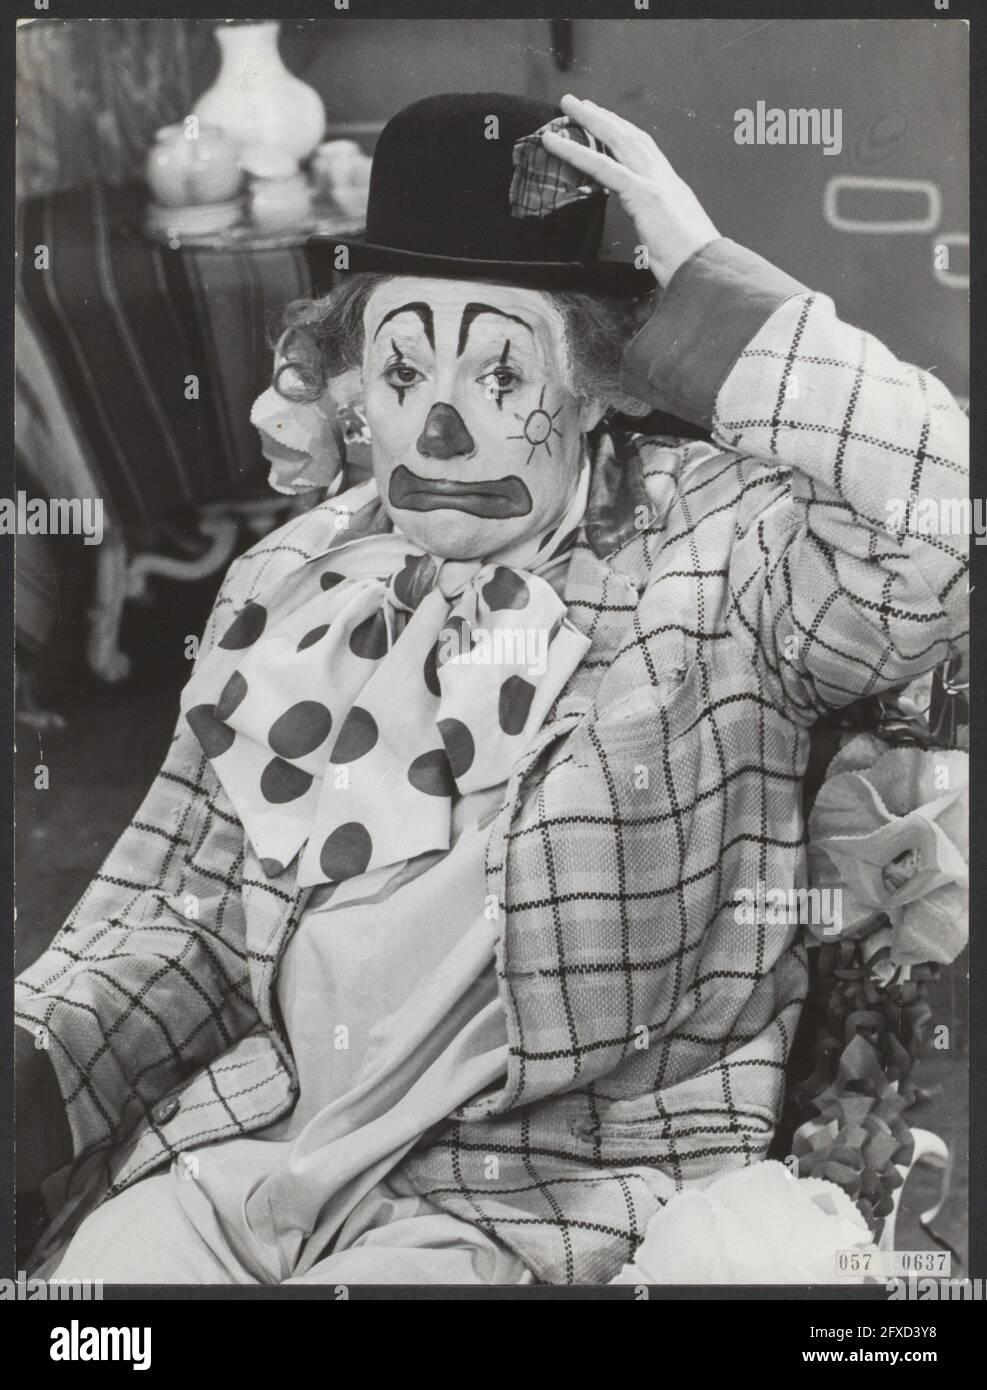 Pipo The Clown (Cor Witschge), 14 febbraio 1962, programmi di intrattenimento, clown, Ritratti, programmi televisivi, Paesi Bassi, foto agenzia stampa del XX secolo, notizie da ricordare, documentario, fotografia storica 1945-1990, storie visive, Storia umana del XX secolo, che cattura momenti nel tempo Foto Stock